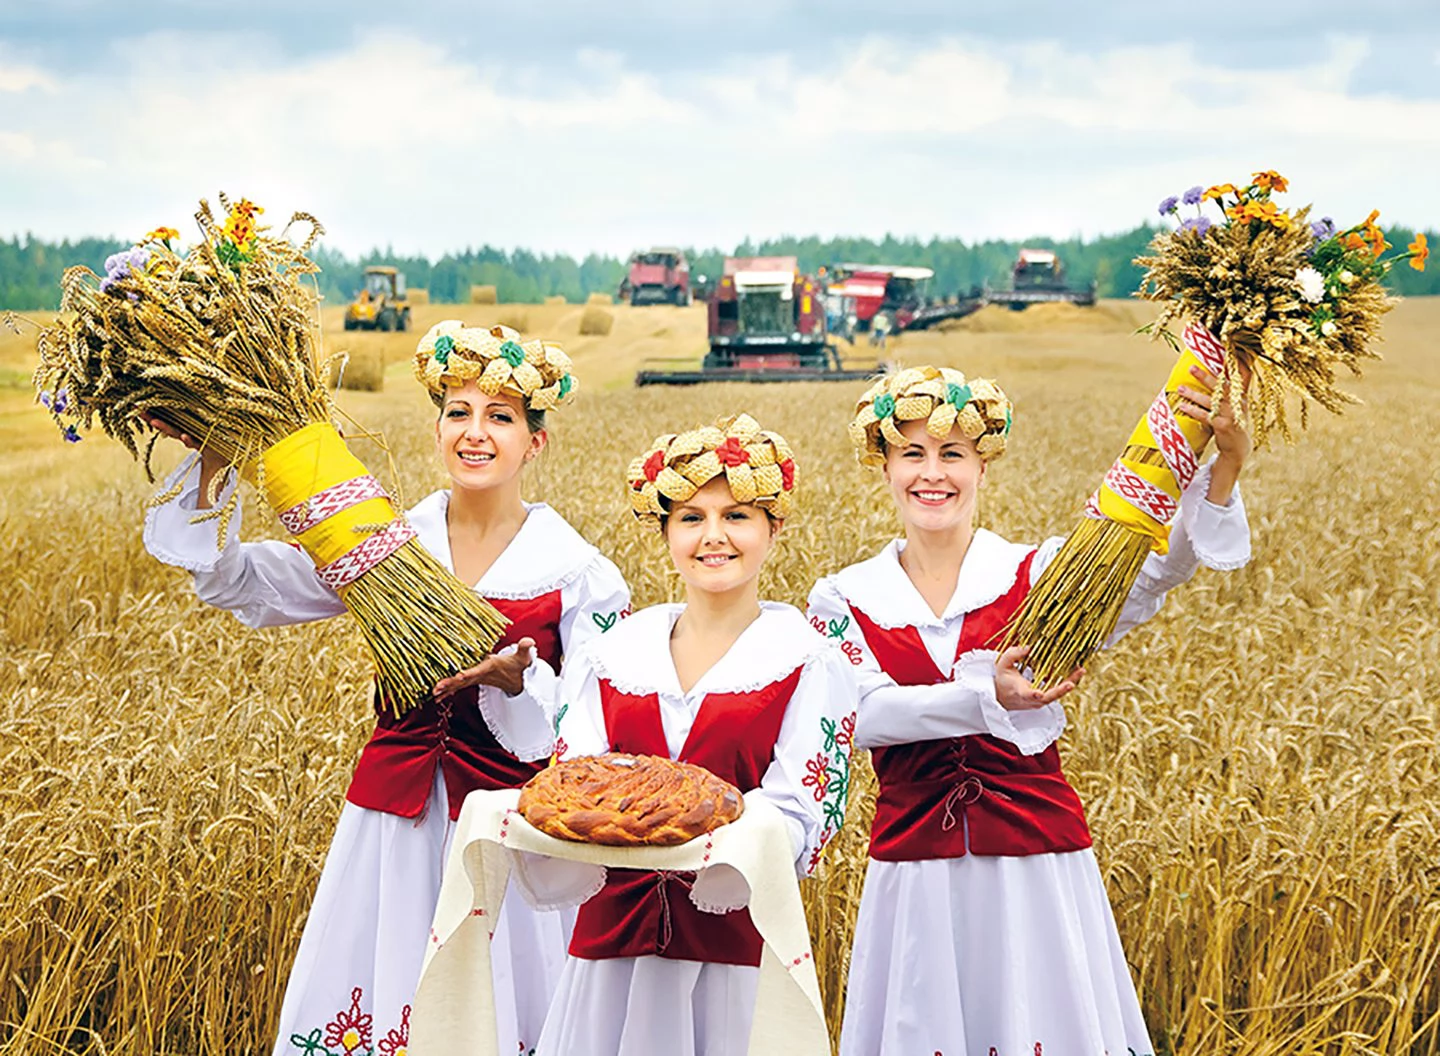 Белорусская культура